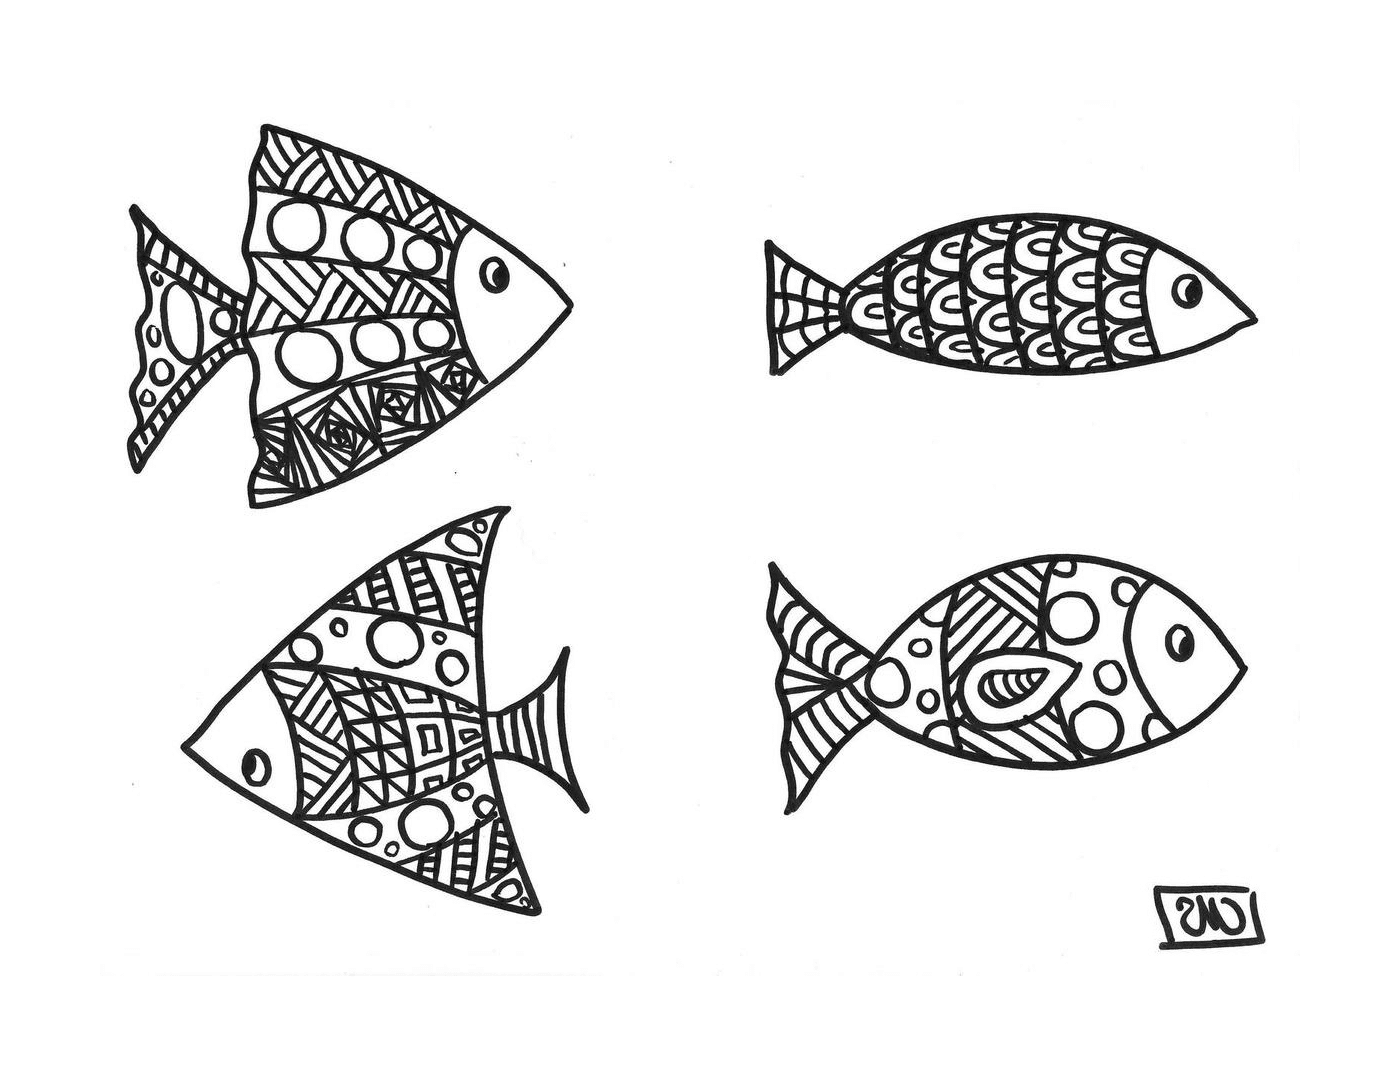  Cuatro peces con patrones únicos 